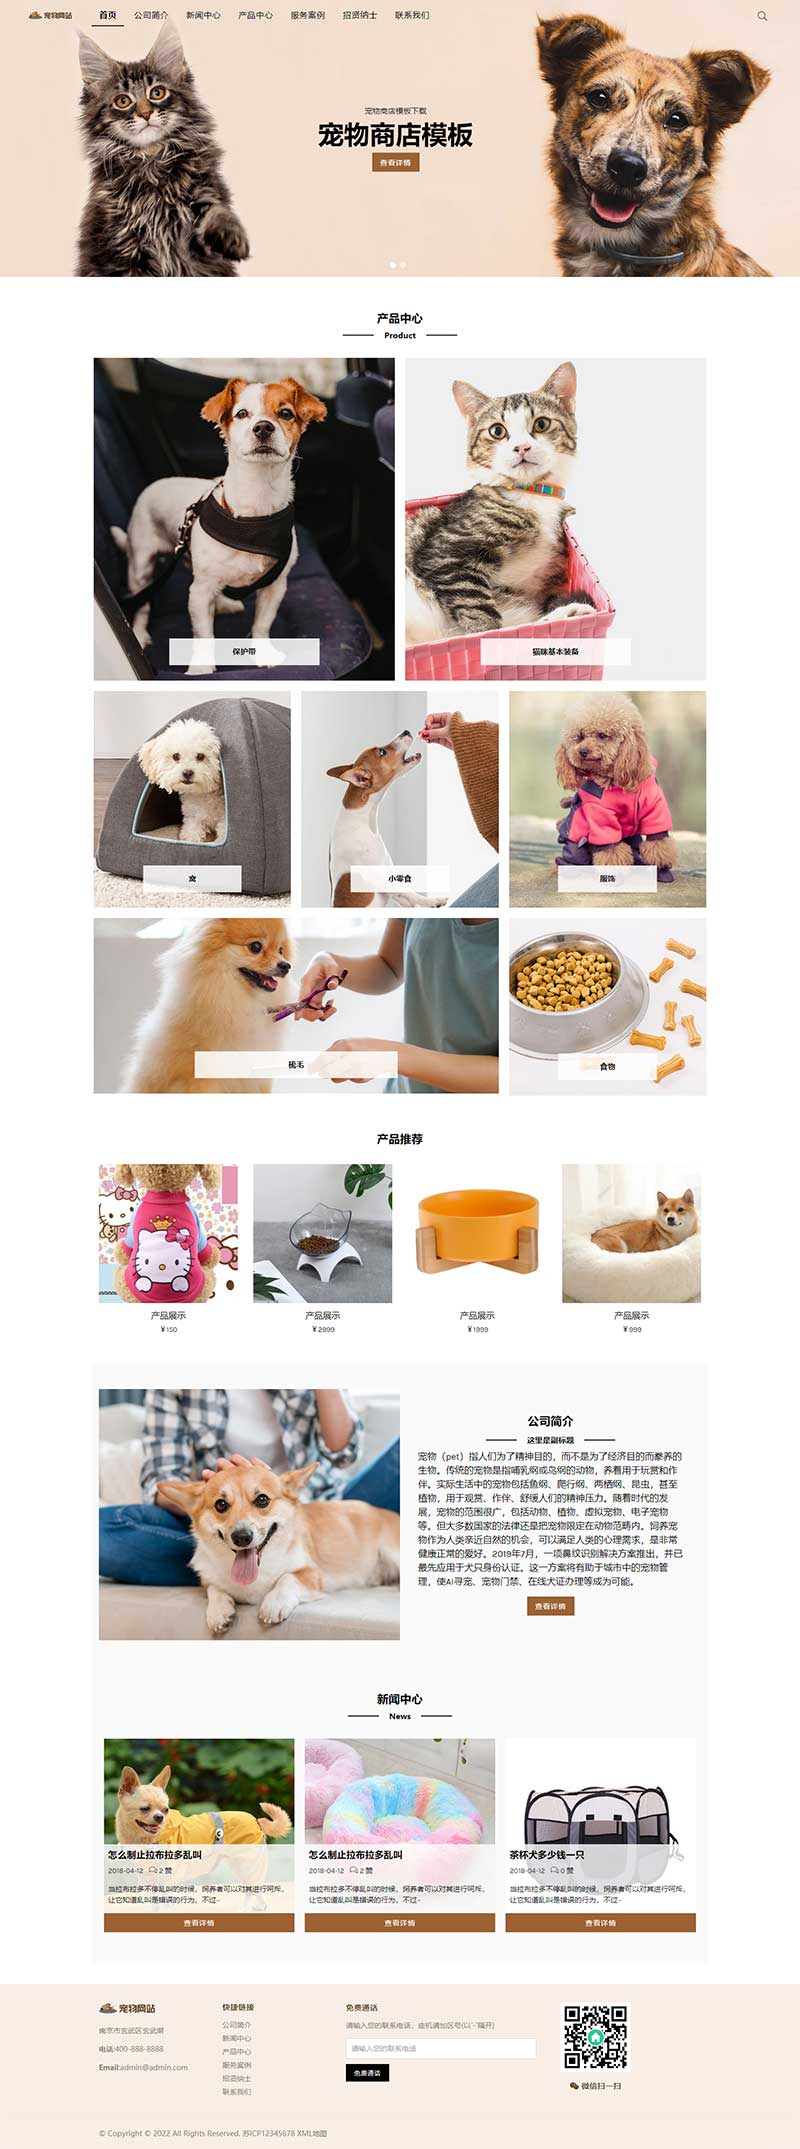 宠物商店宠物装备类网站Wordpress模板效果图